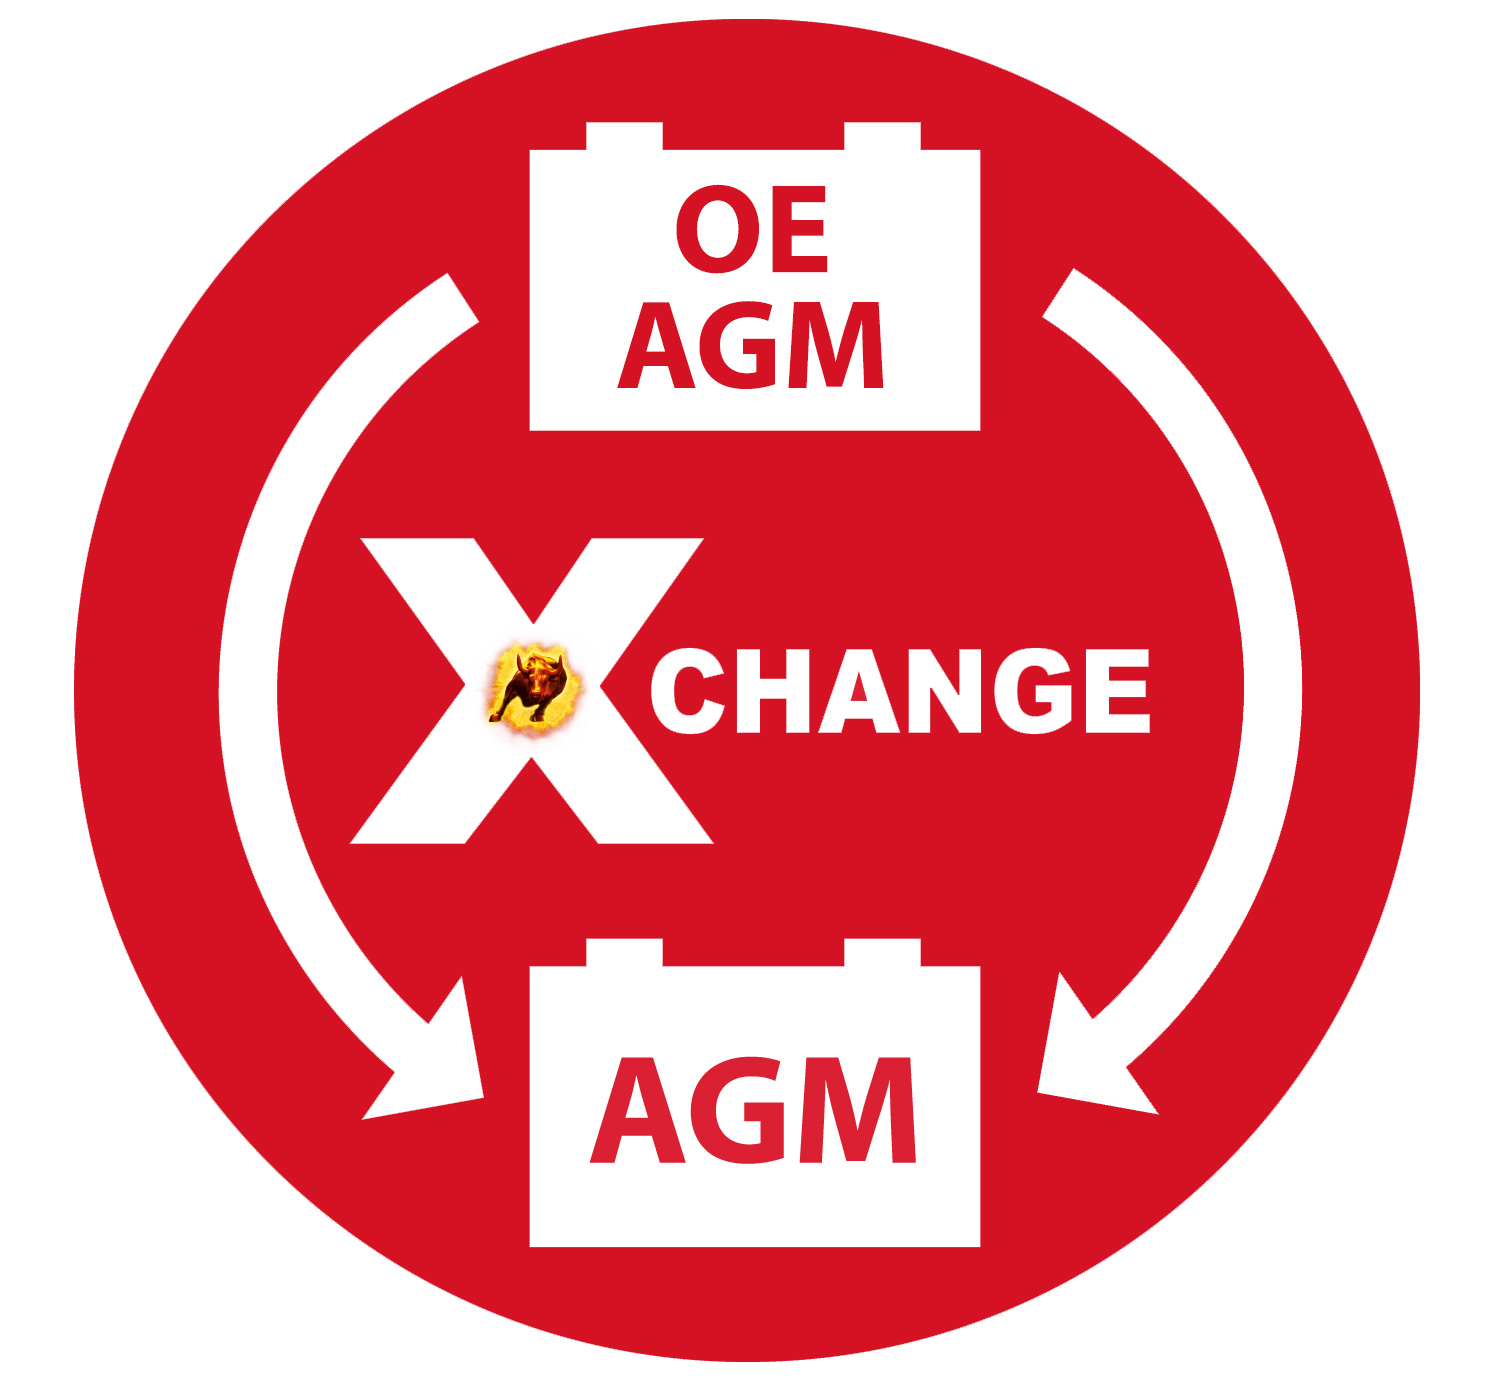 x-change: AGM